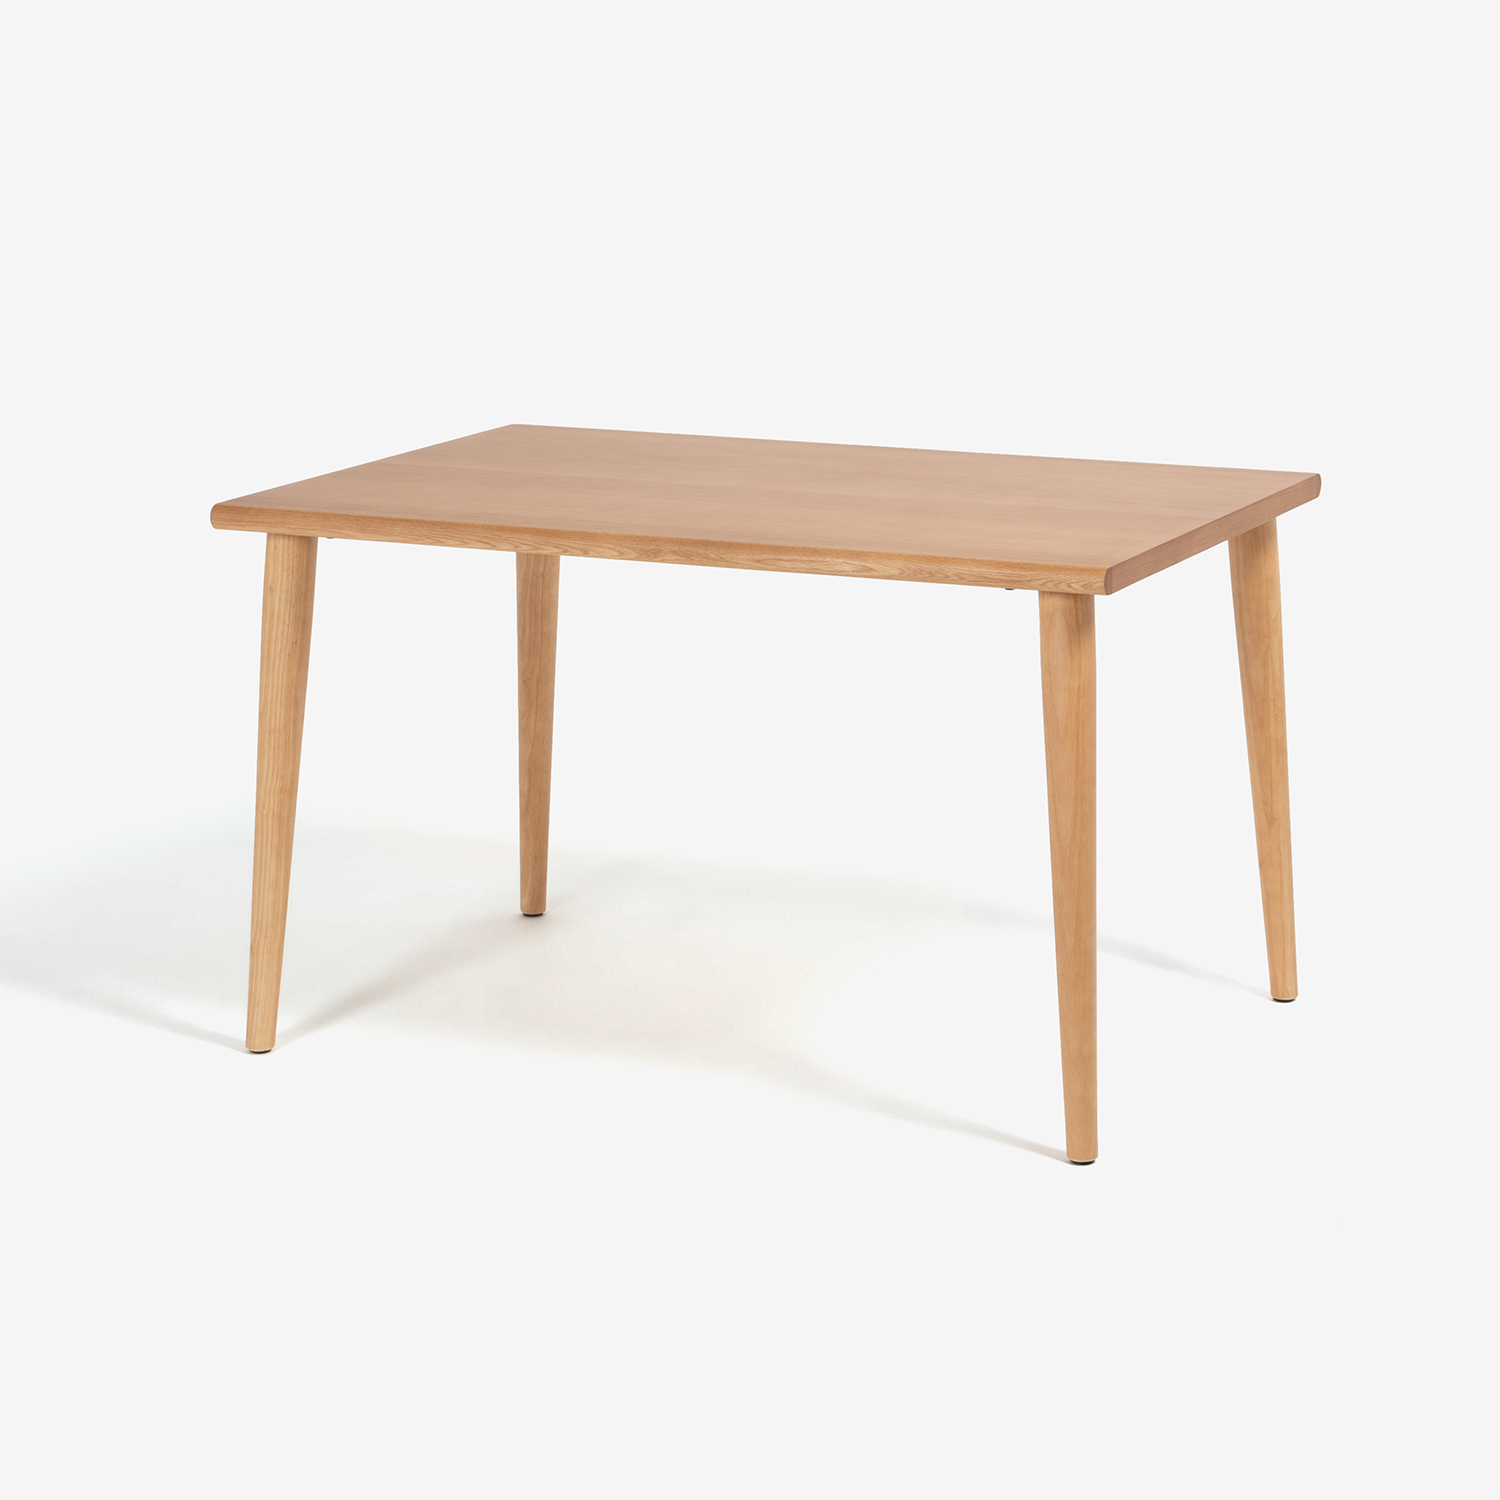 ダイニングテーブル「ユノ3」幅80cm レッドオーク材 ホワイトオーク色